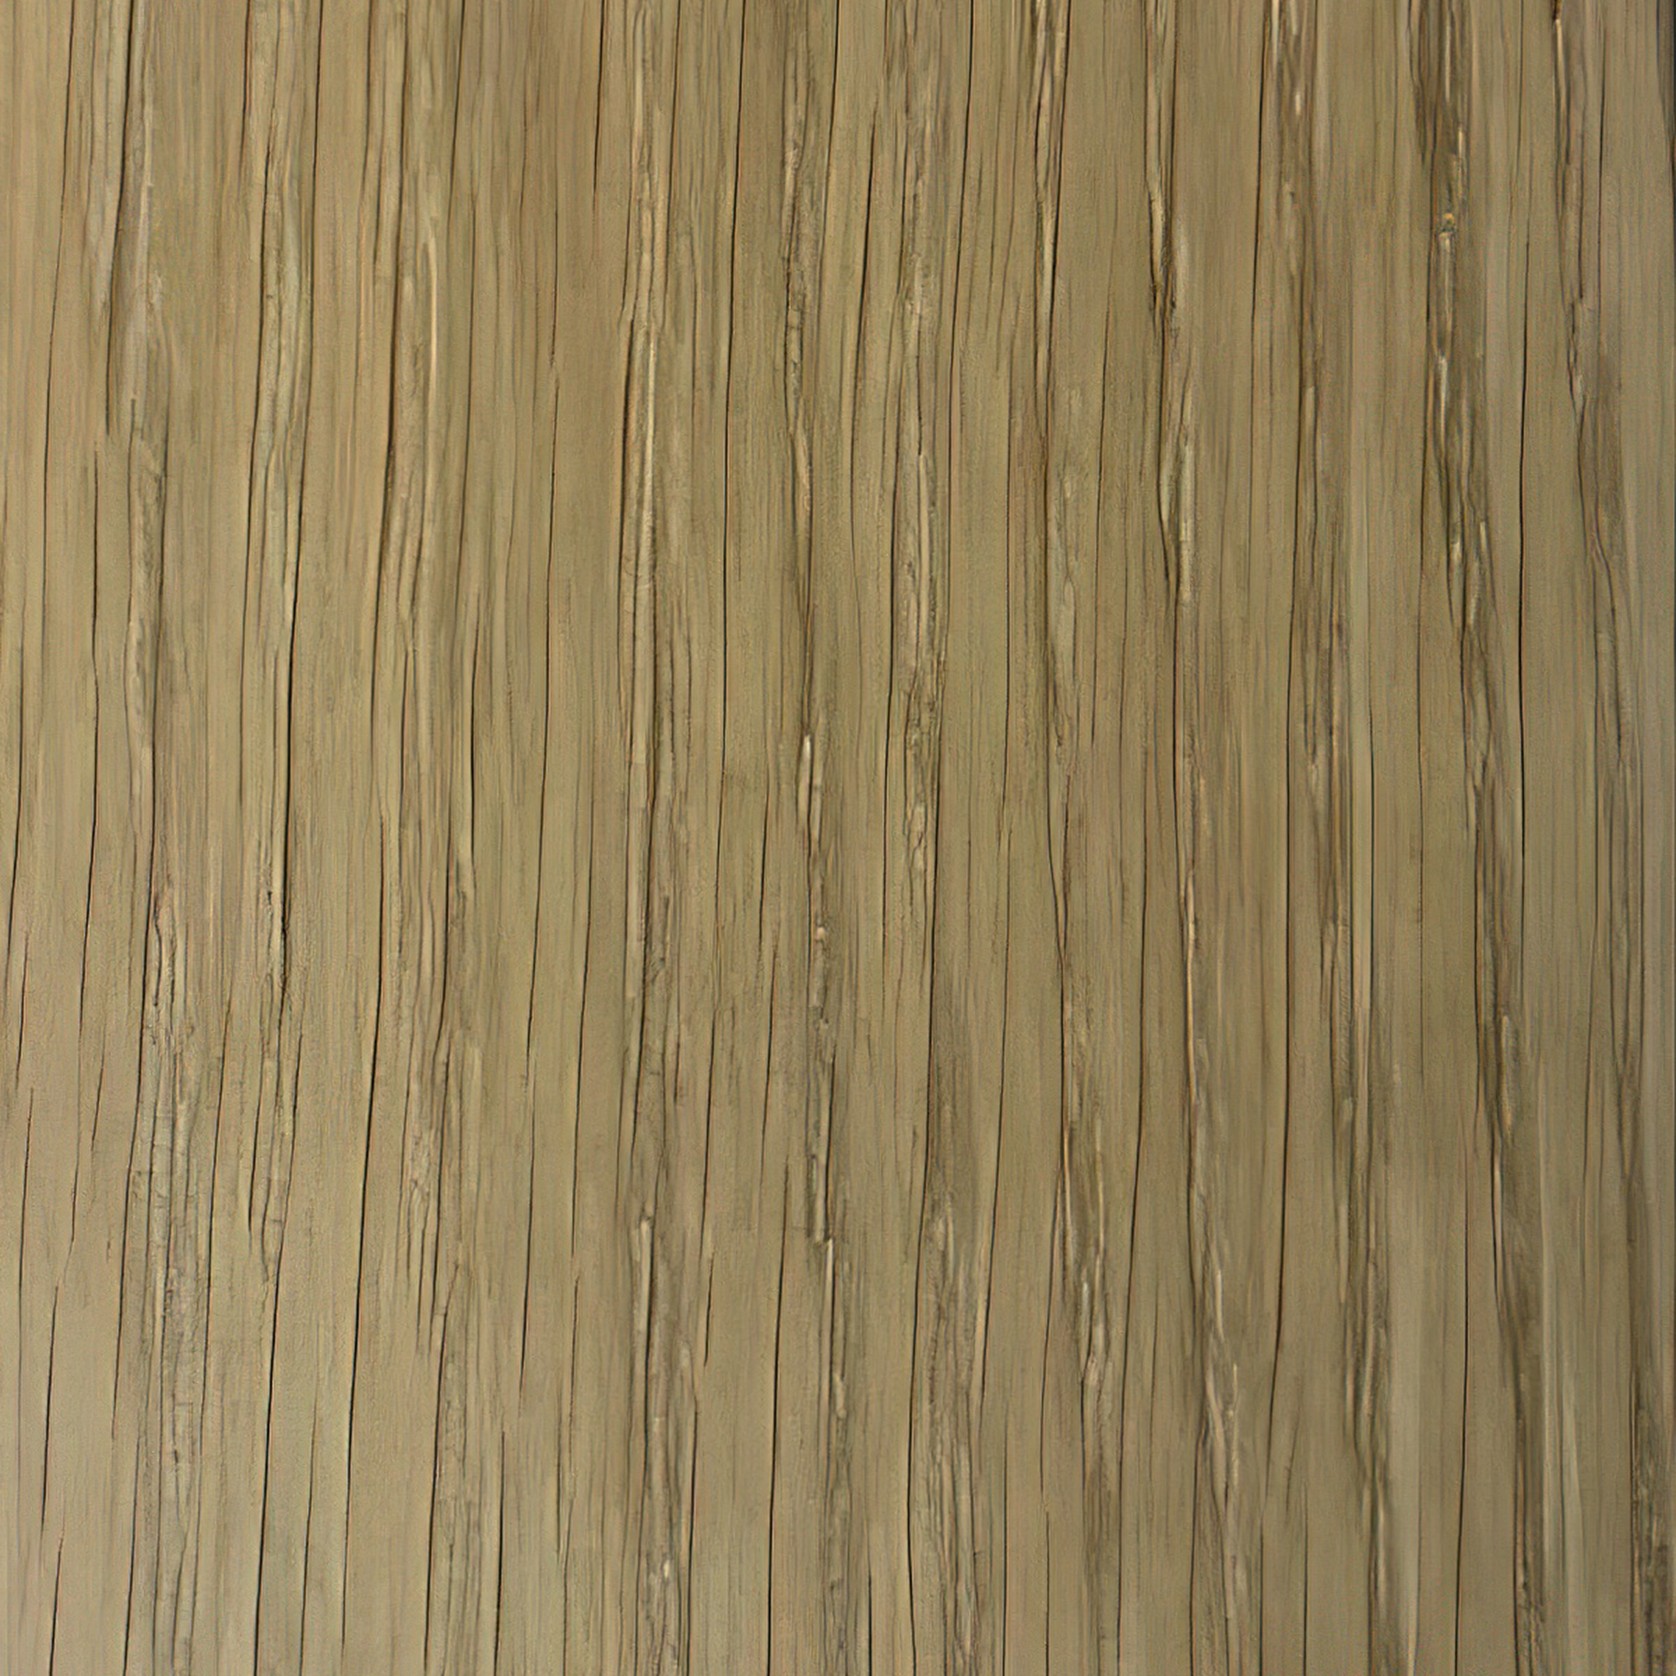 Nude Oiled Wood Flooring gallery detail image